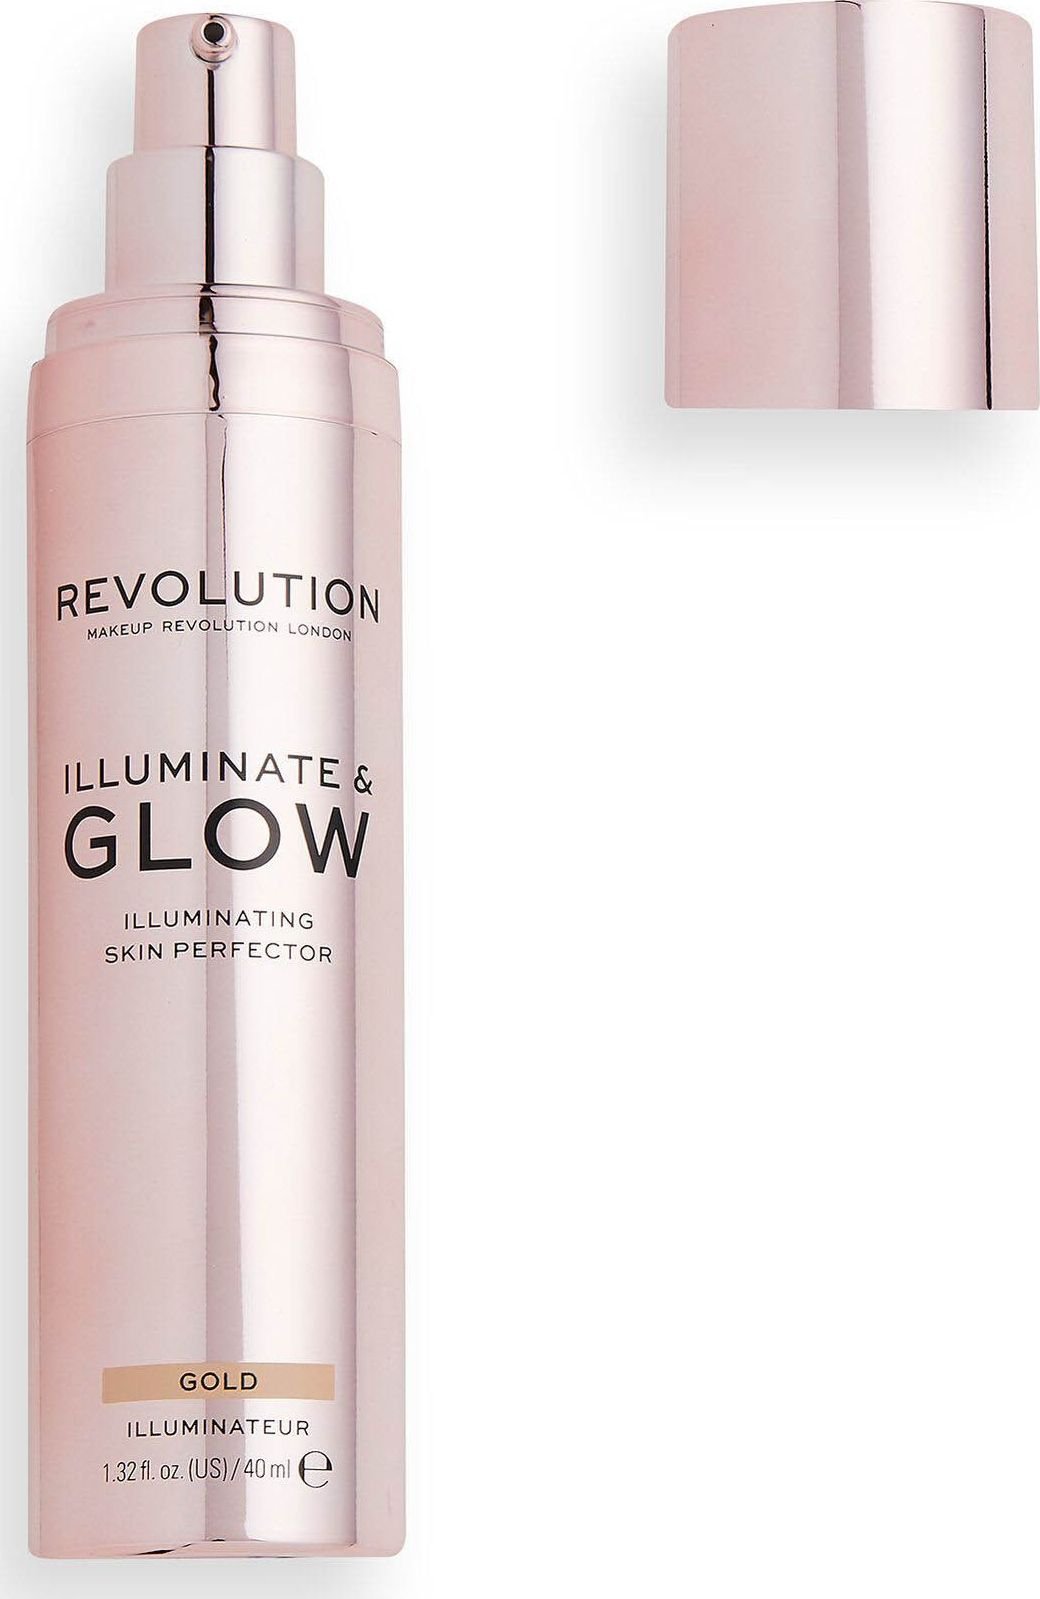 Machiaj Revolutia London Glow si Iluminati Rozsiwetlare 40mlAur Makeup Revolution este o marca de machiaj care provine din Londra si are ca scop sa ofere produse de calitate la preturi accesibile. Produsul lor numit Glow & Illuminate este un rozsiwe